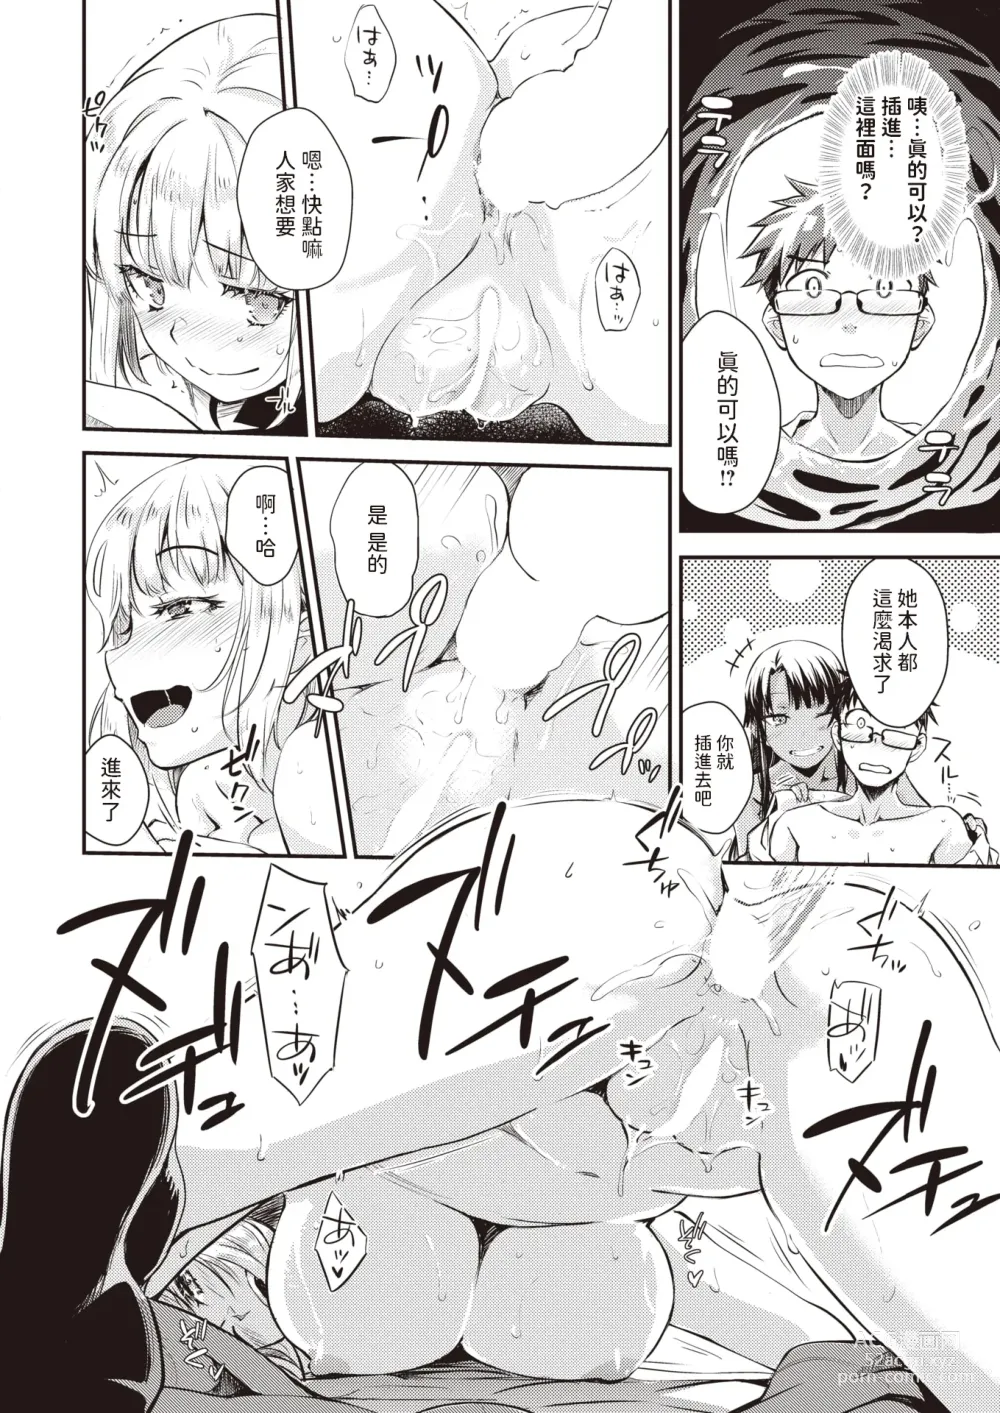 Page 14 of manga Oshiete Ageru